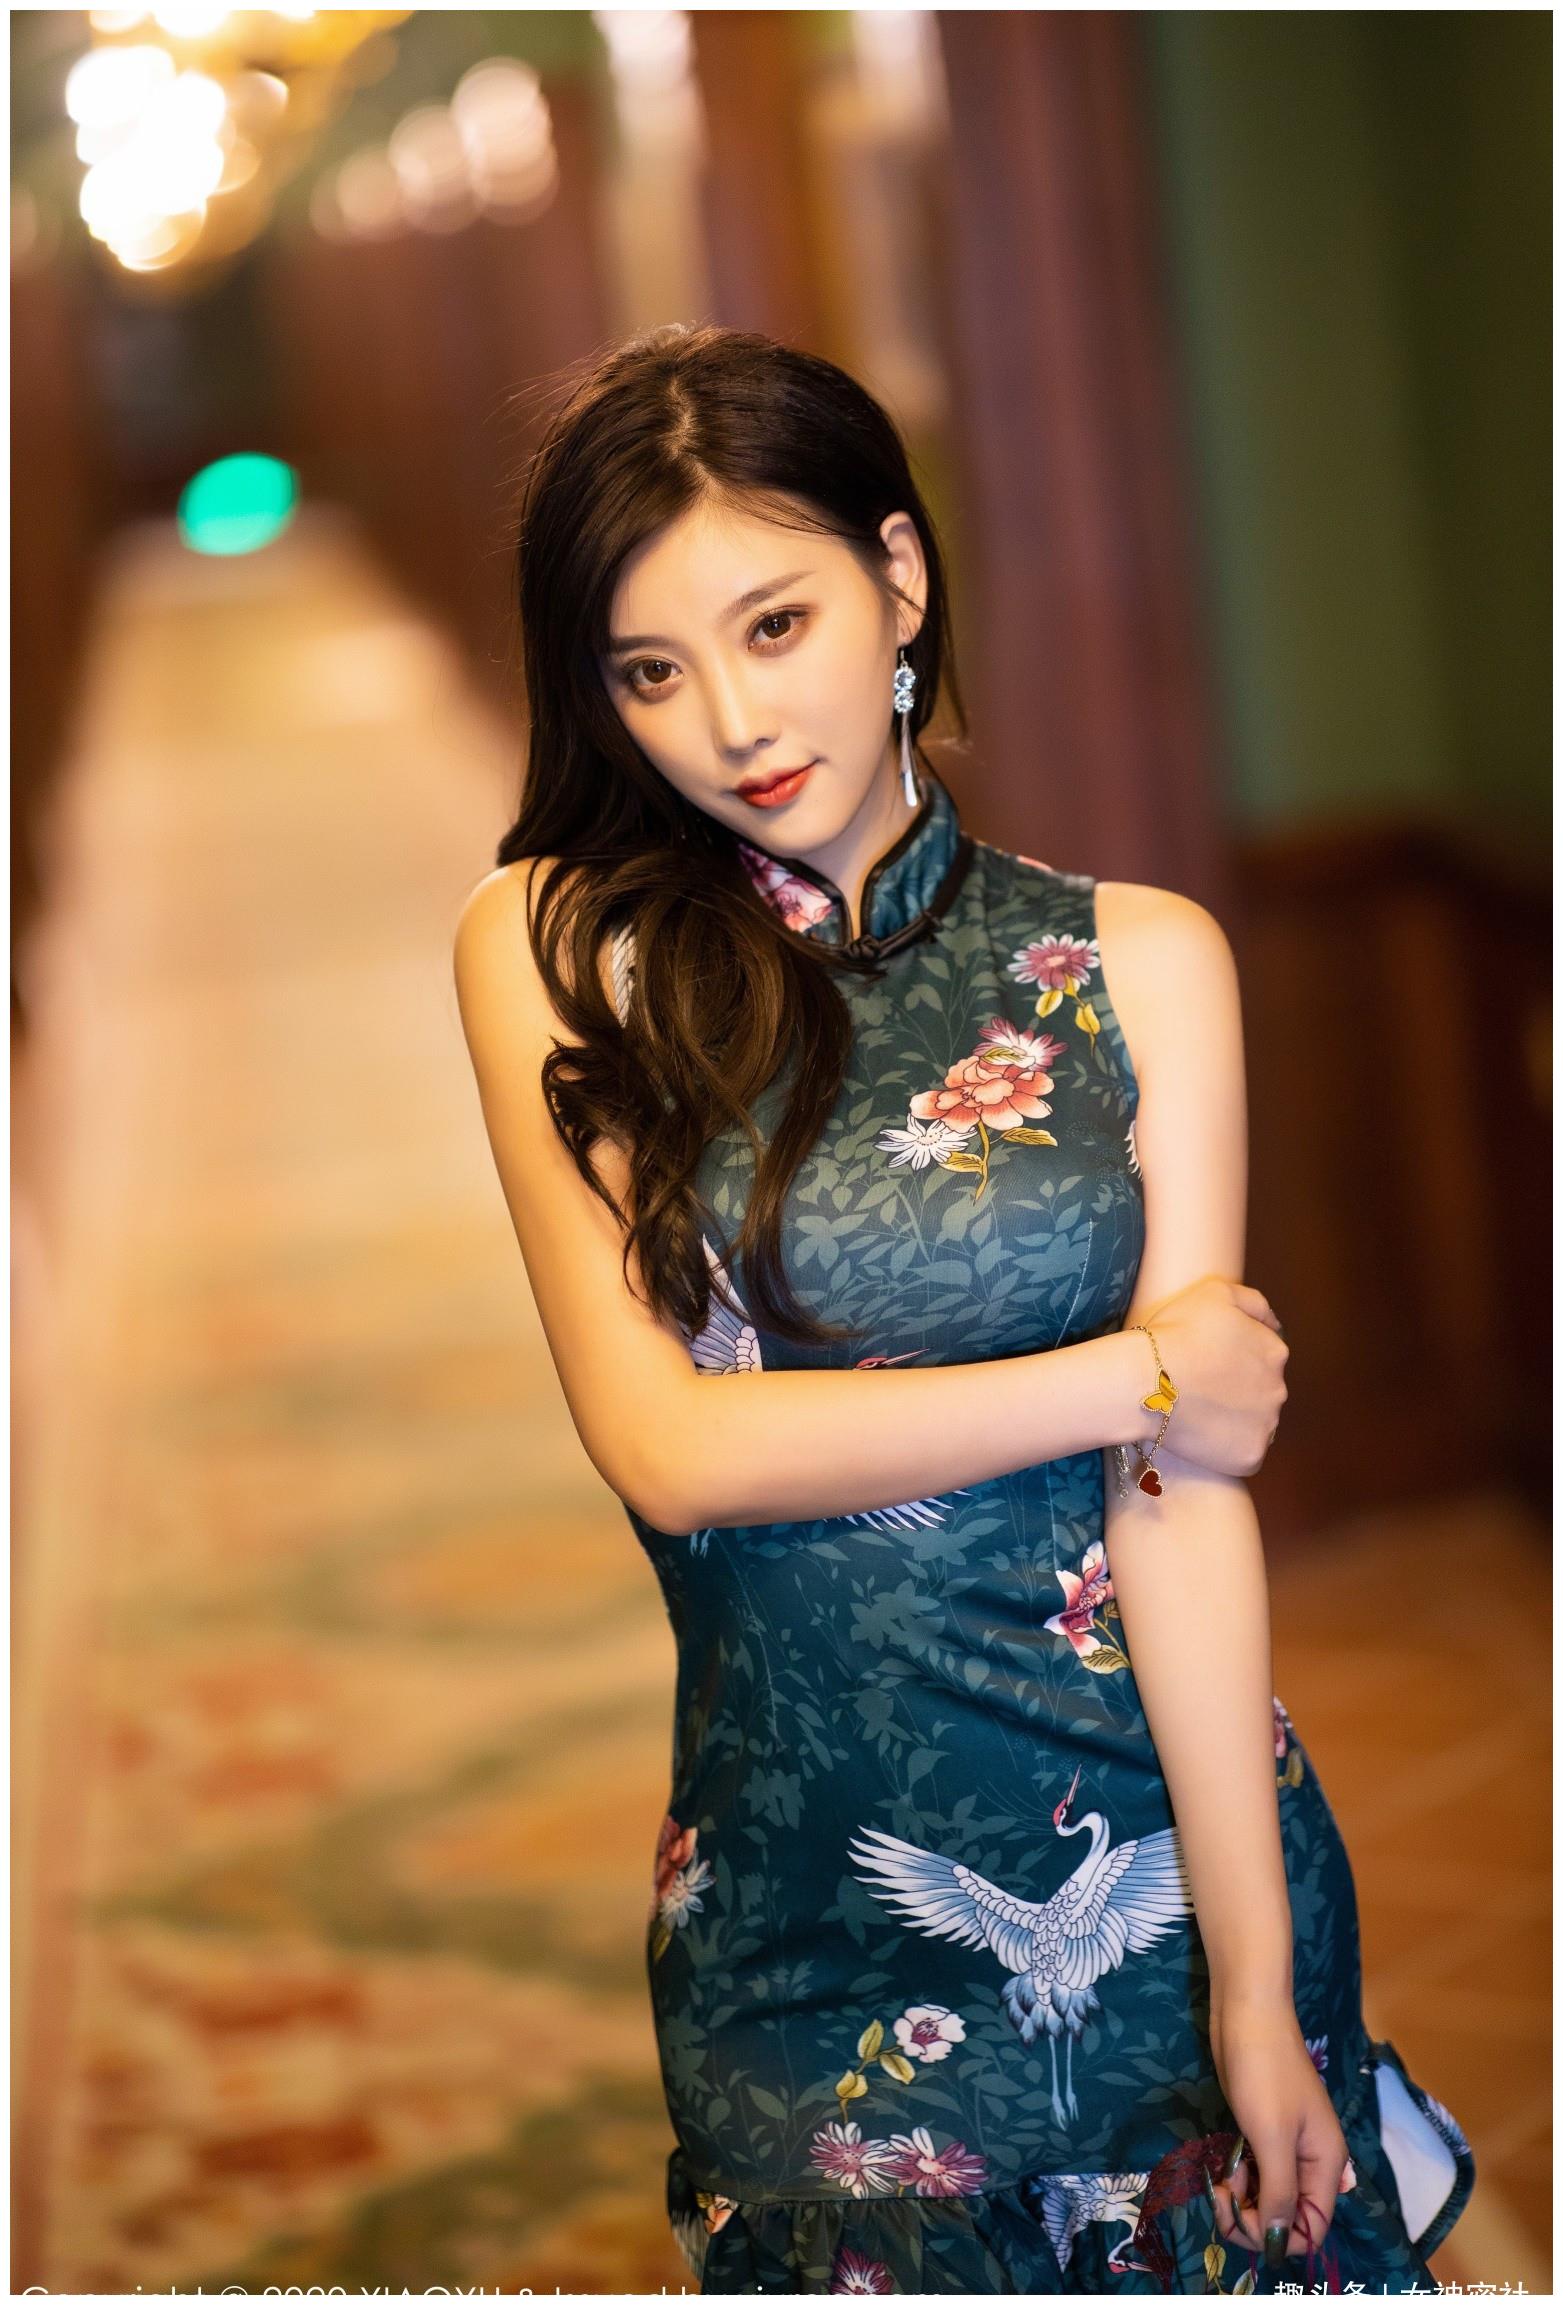 旗袍拍摄 旗袍模特 古风拍摄 文艺模特拍摄 - 广州北斗摄影公司